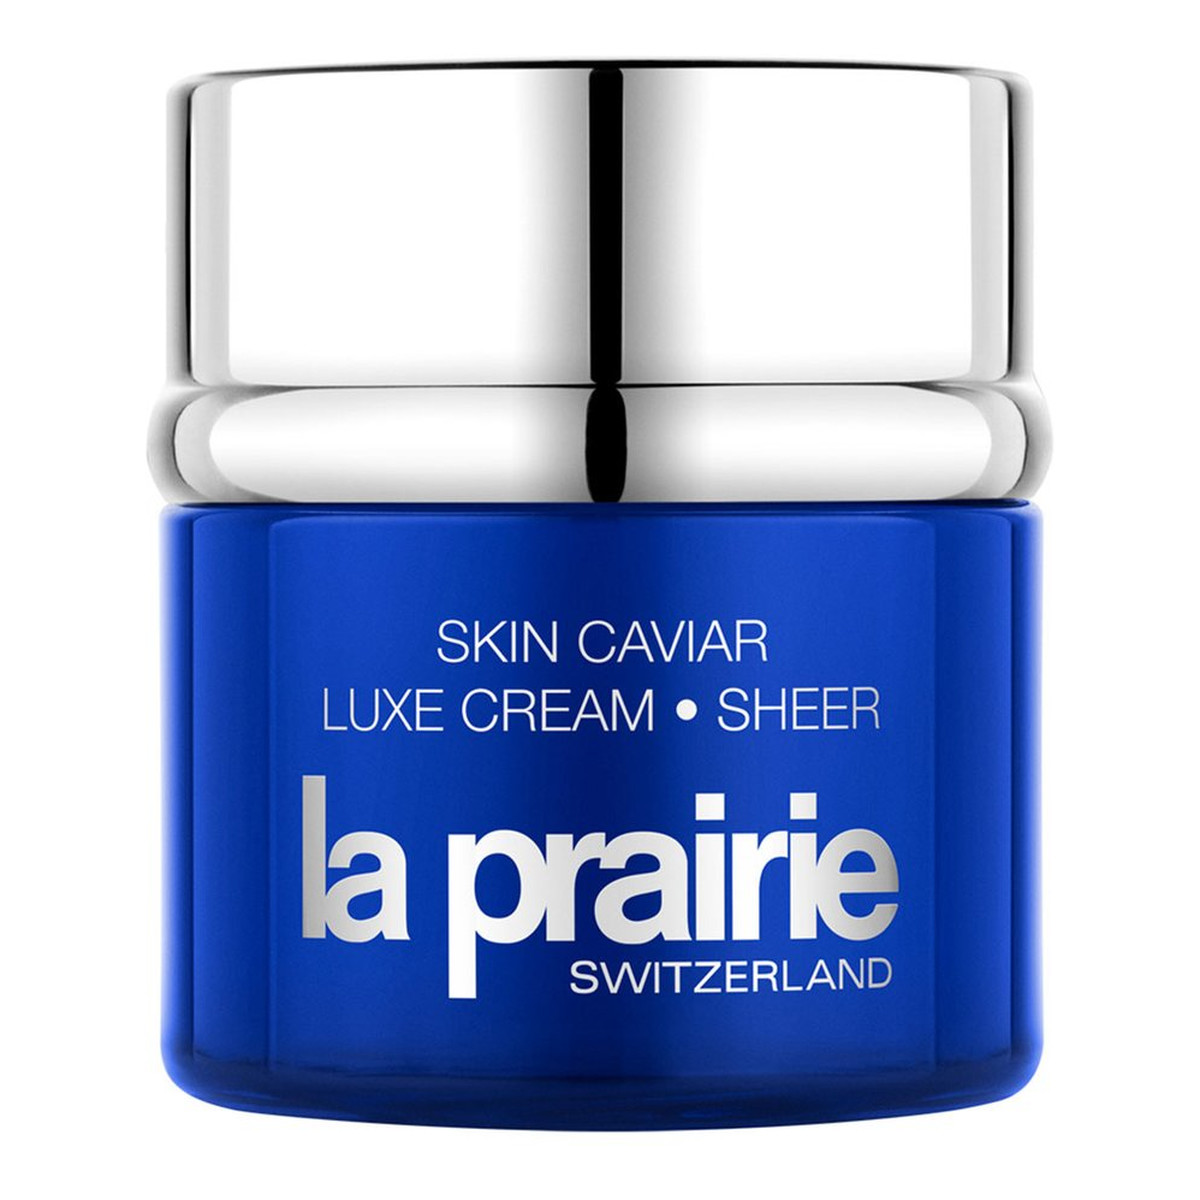 La Prairie Skin Caviar Luxe Cream Sheer kawiorowy krem liftingujący 50ml